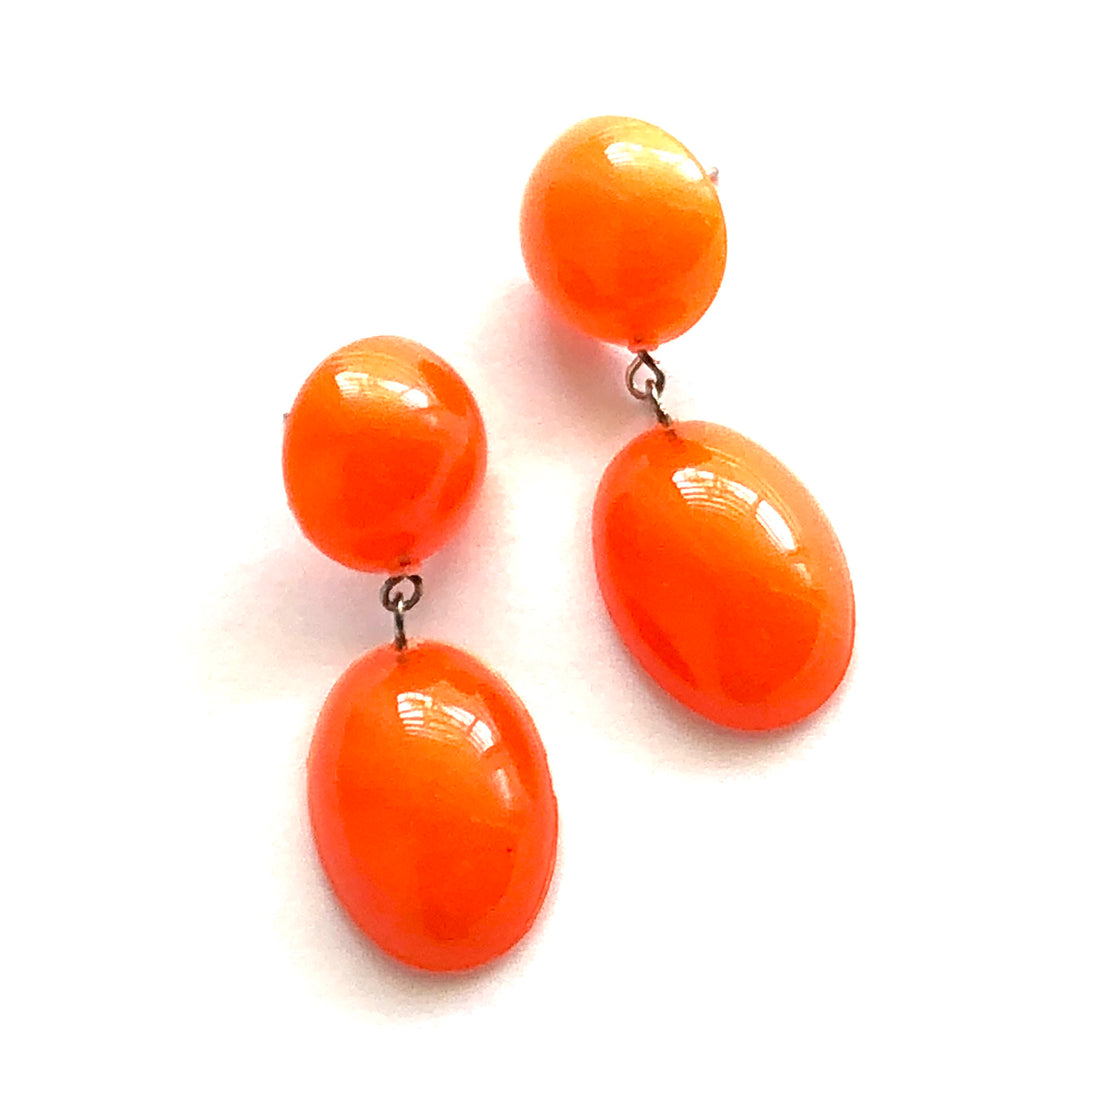 Orange Aura Glow Jelly Bean Earrings